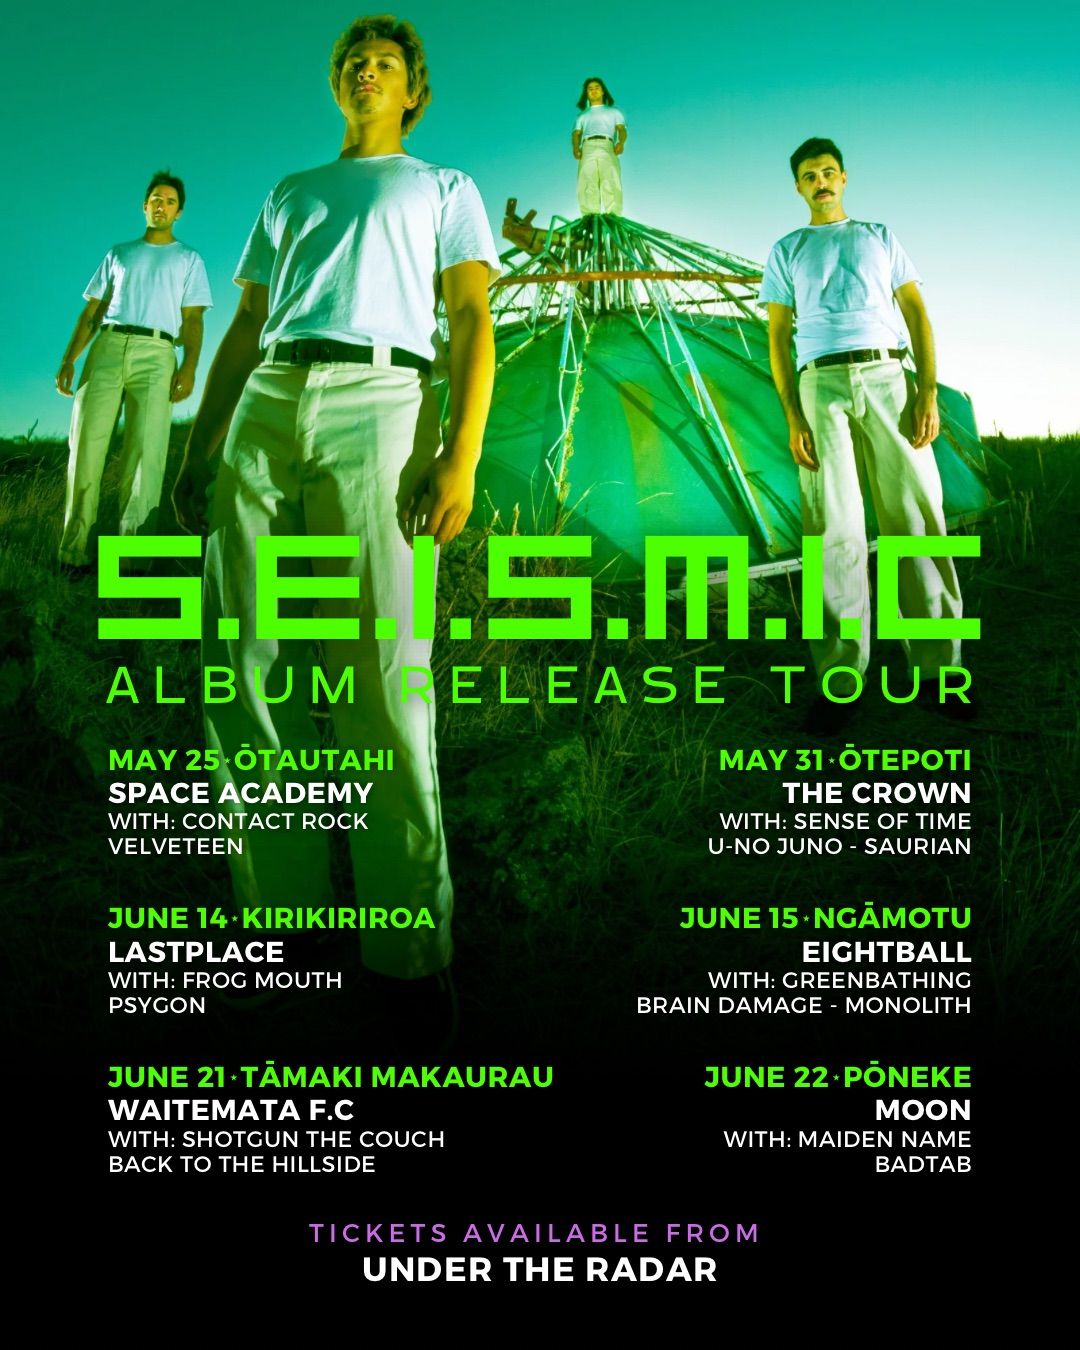 S.E.I.S.M.I.C Album Release Tour - Underground